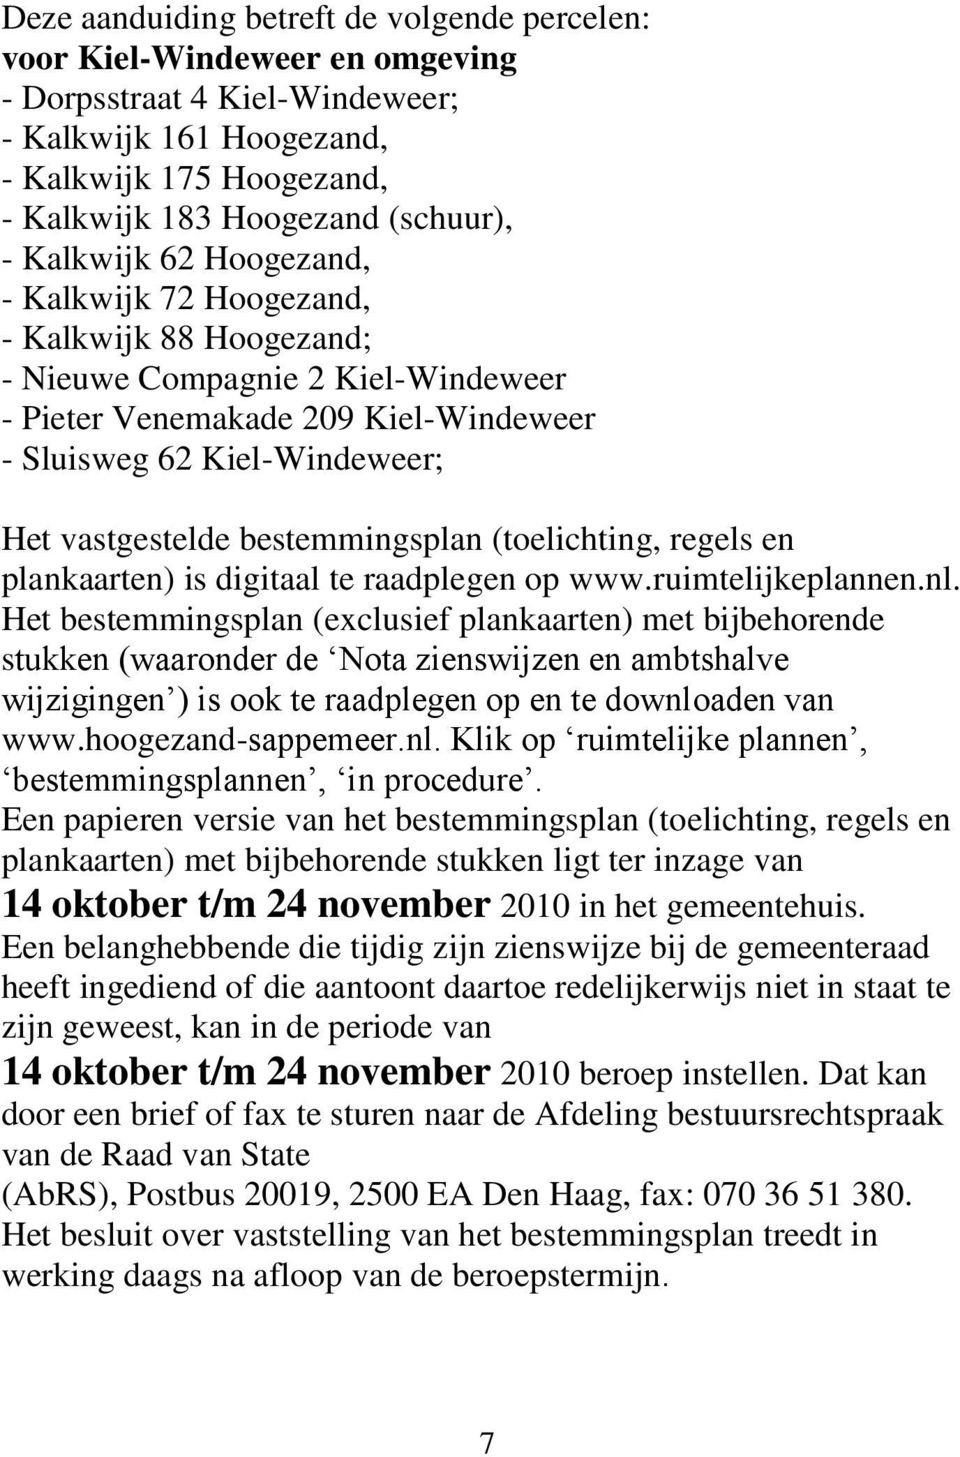 bestemmingsplan (toelichting, regels en plankaarten) is digitaal te raadplegen op www.ruimtelijkeplannen.nl.